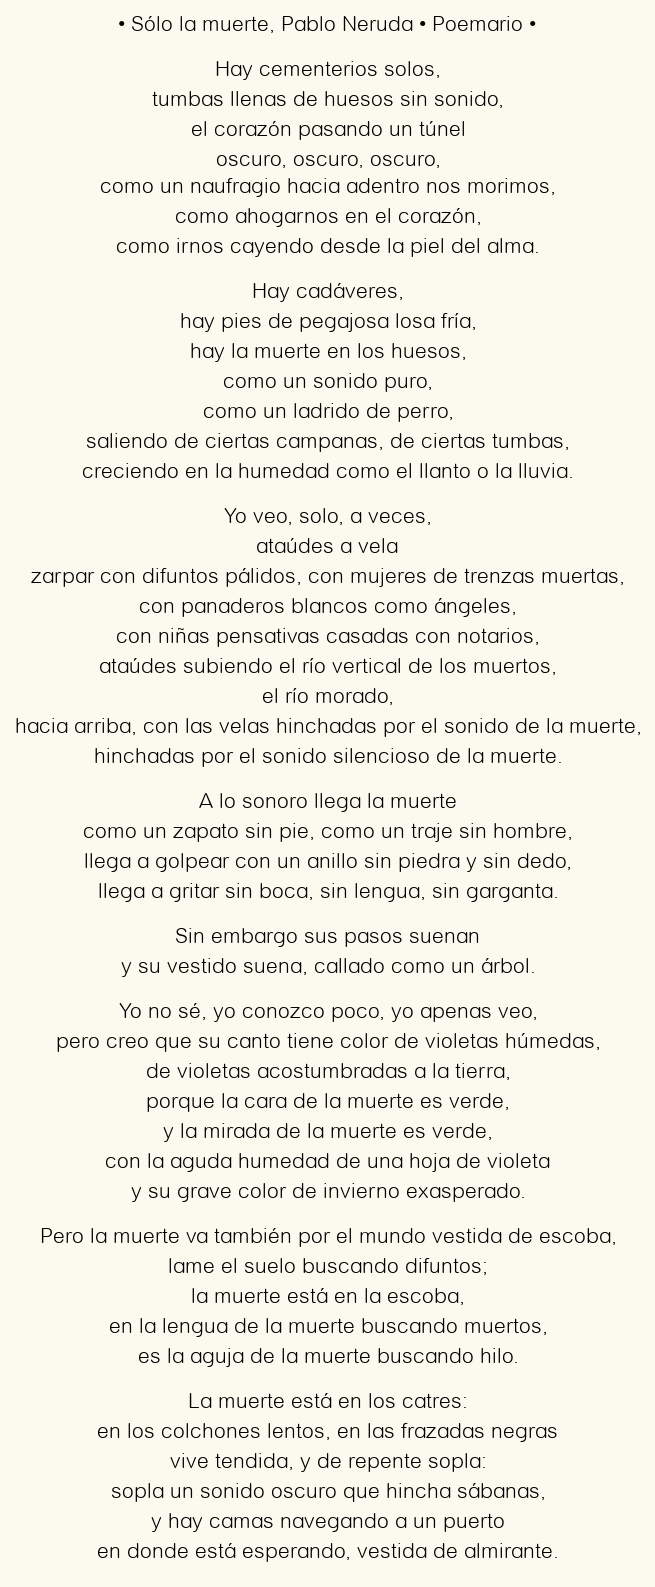 Análisis detallado del poema La muerte de Pablo Neruda